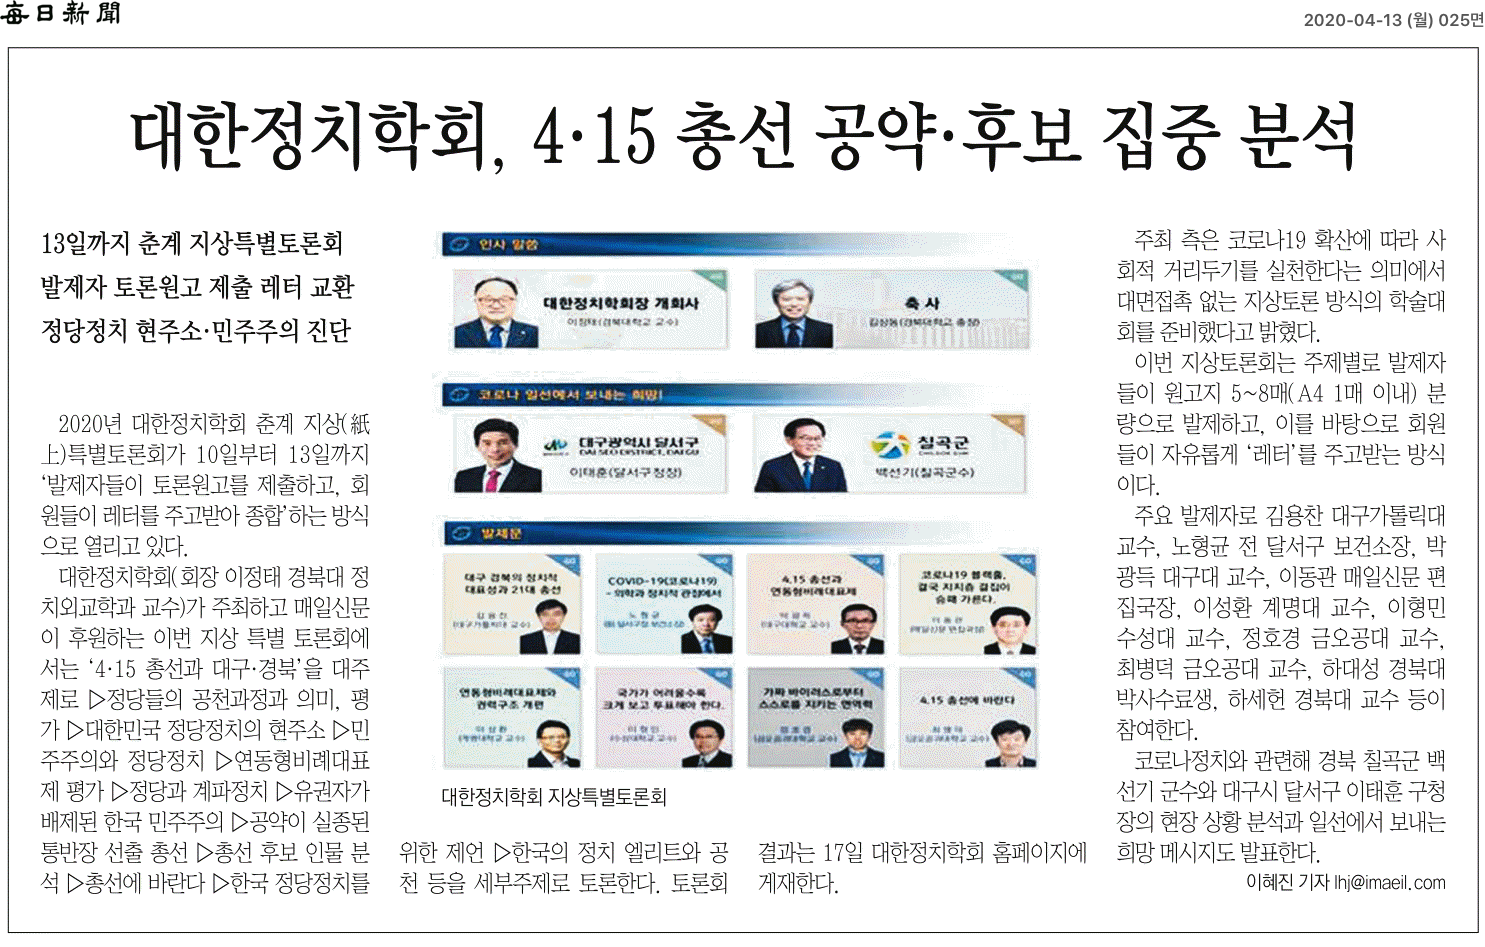 춘계 지상 특별 토론회 매일신문 기사(20200413).png